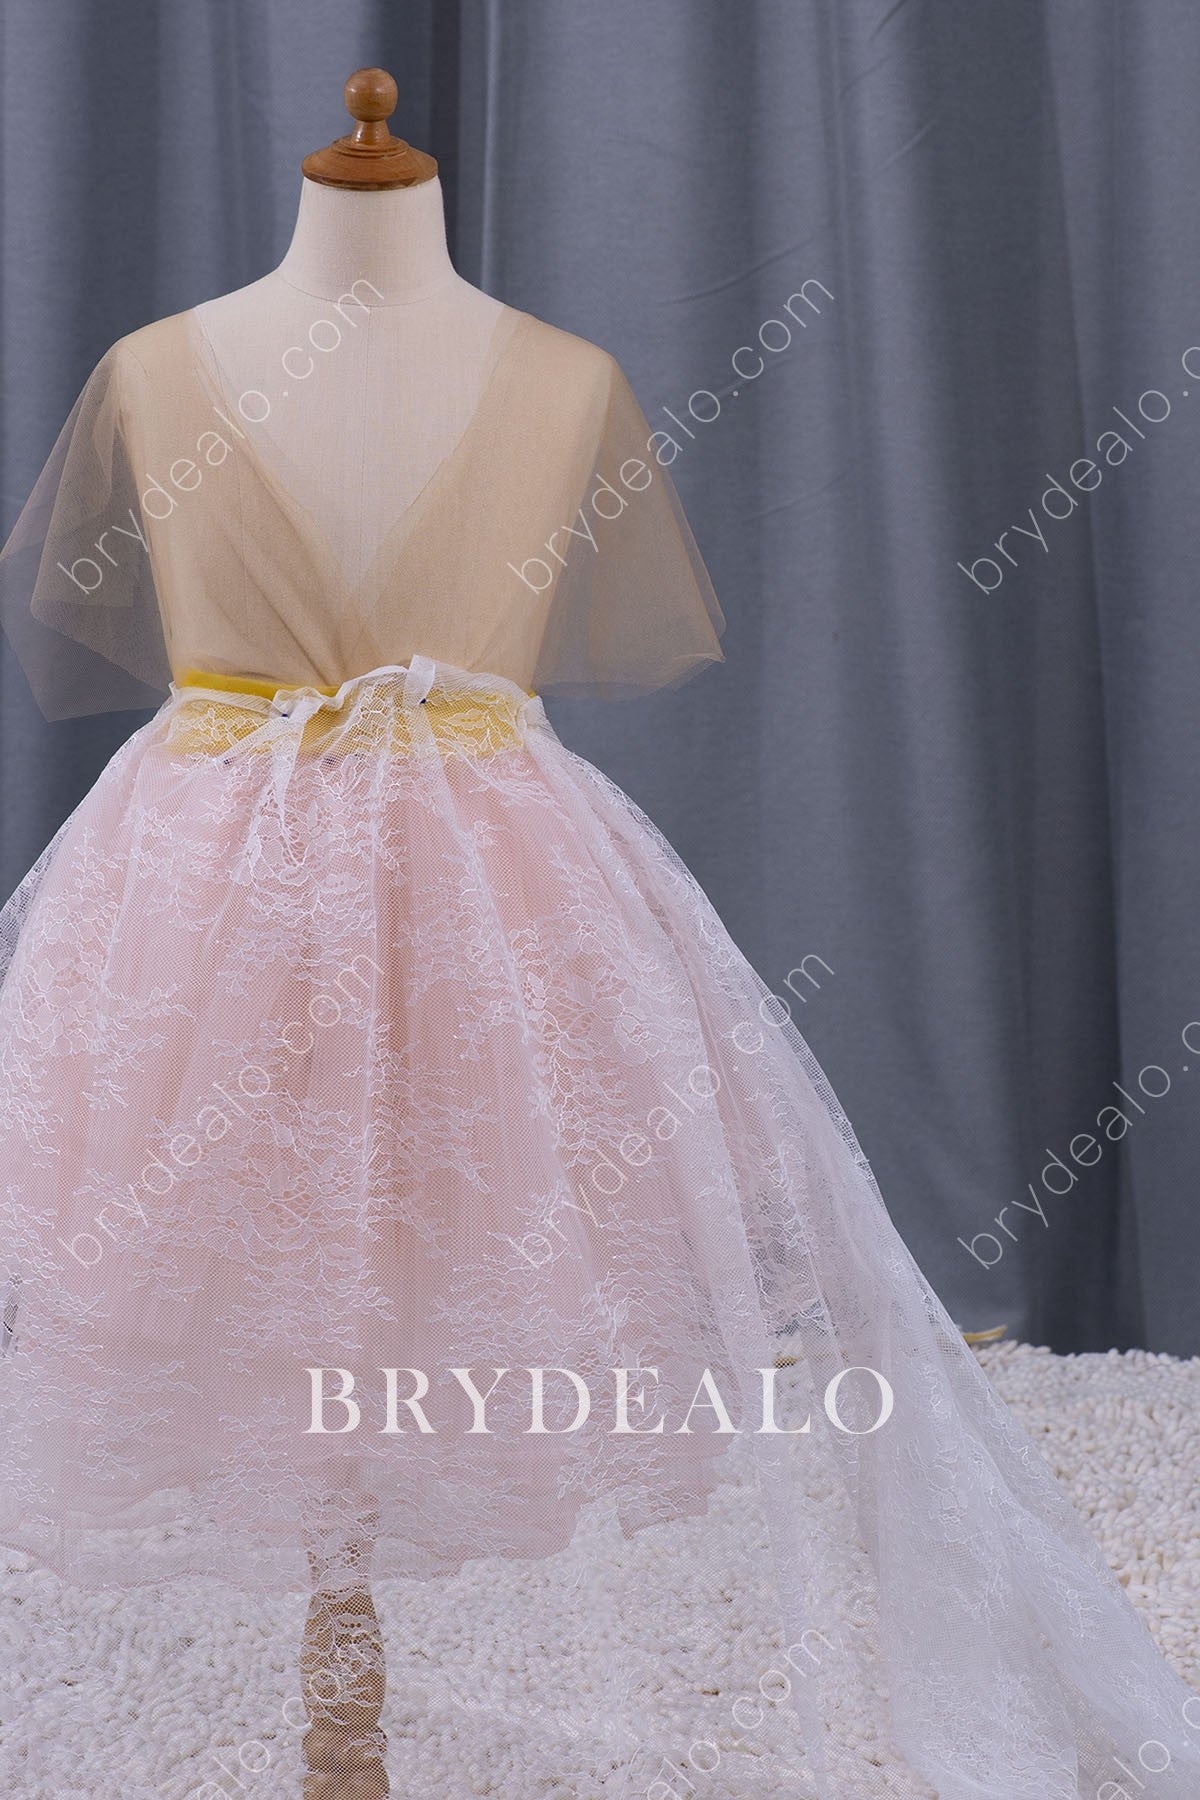 Delicate Botanic Bridal Lace Fabric